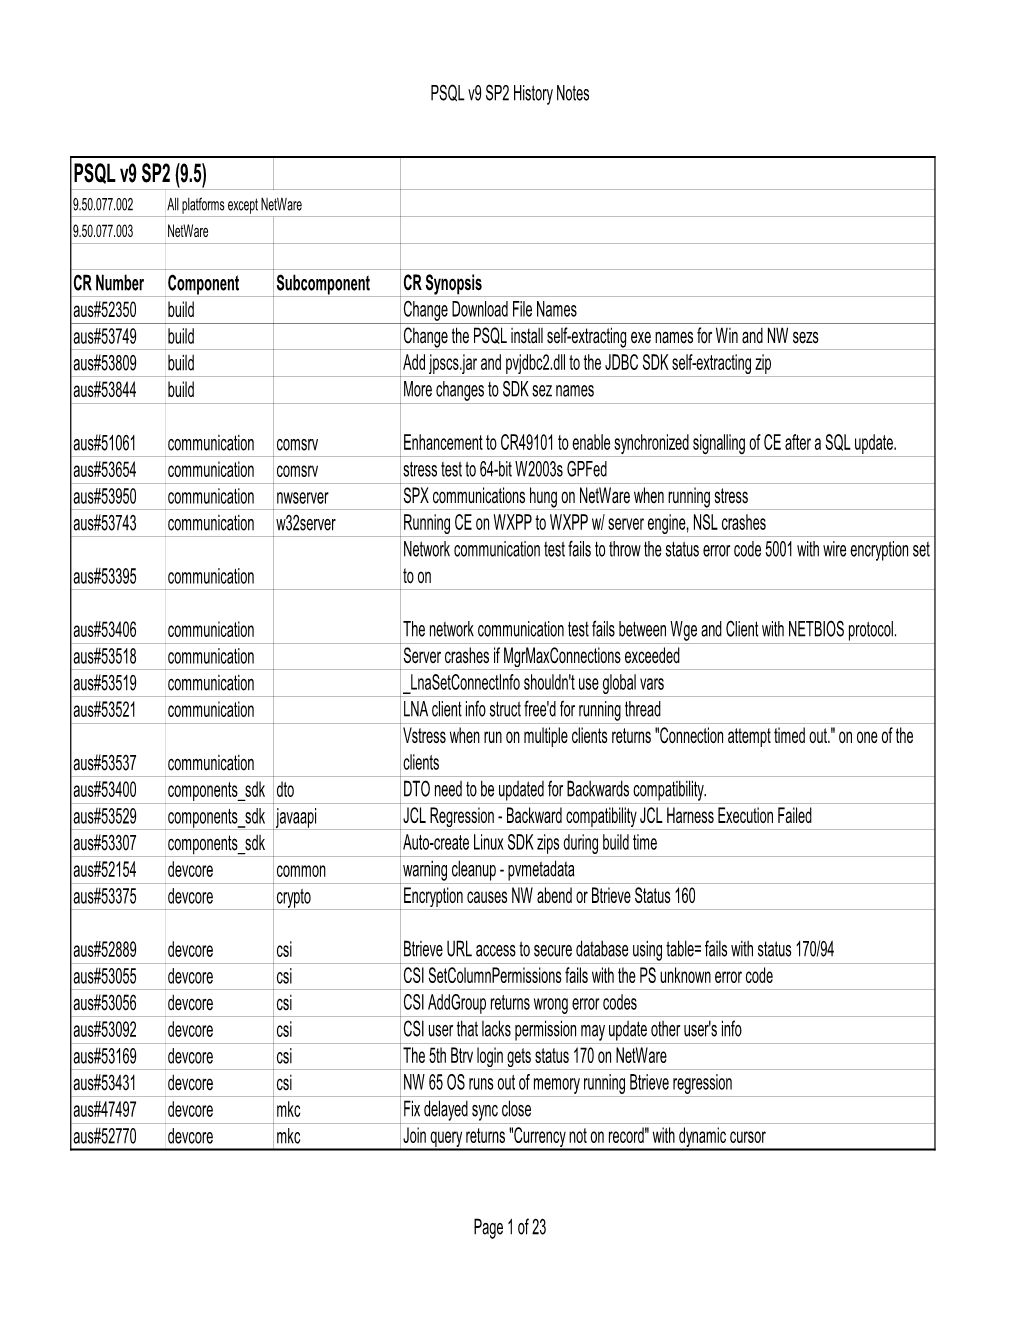 PSQL V9 SP2 (9.5) 9.50.077.002 All Platforms Except Netware 9.50.077.003 Netware